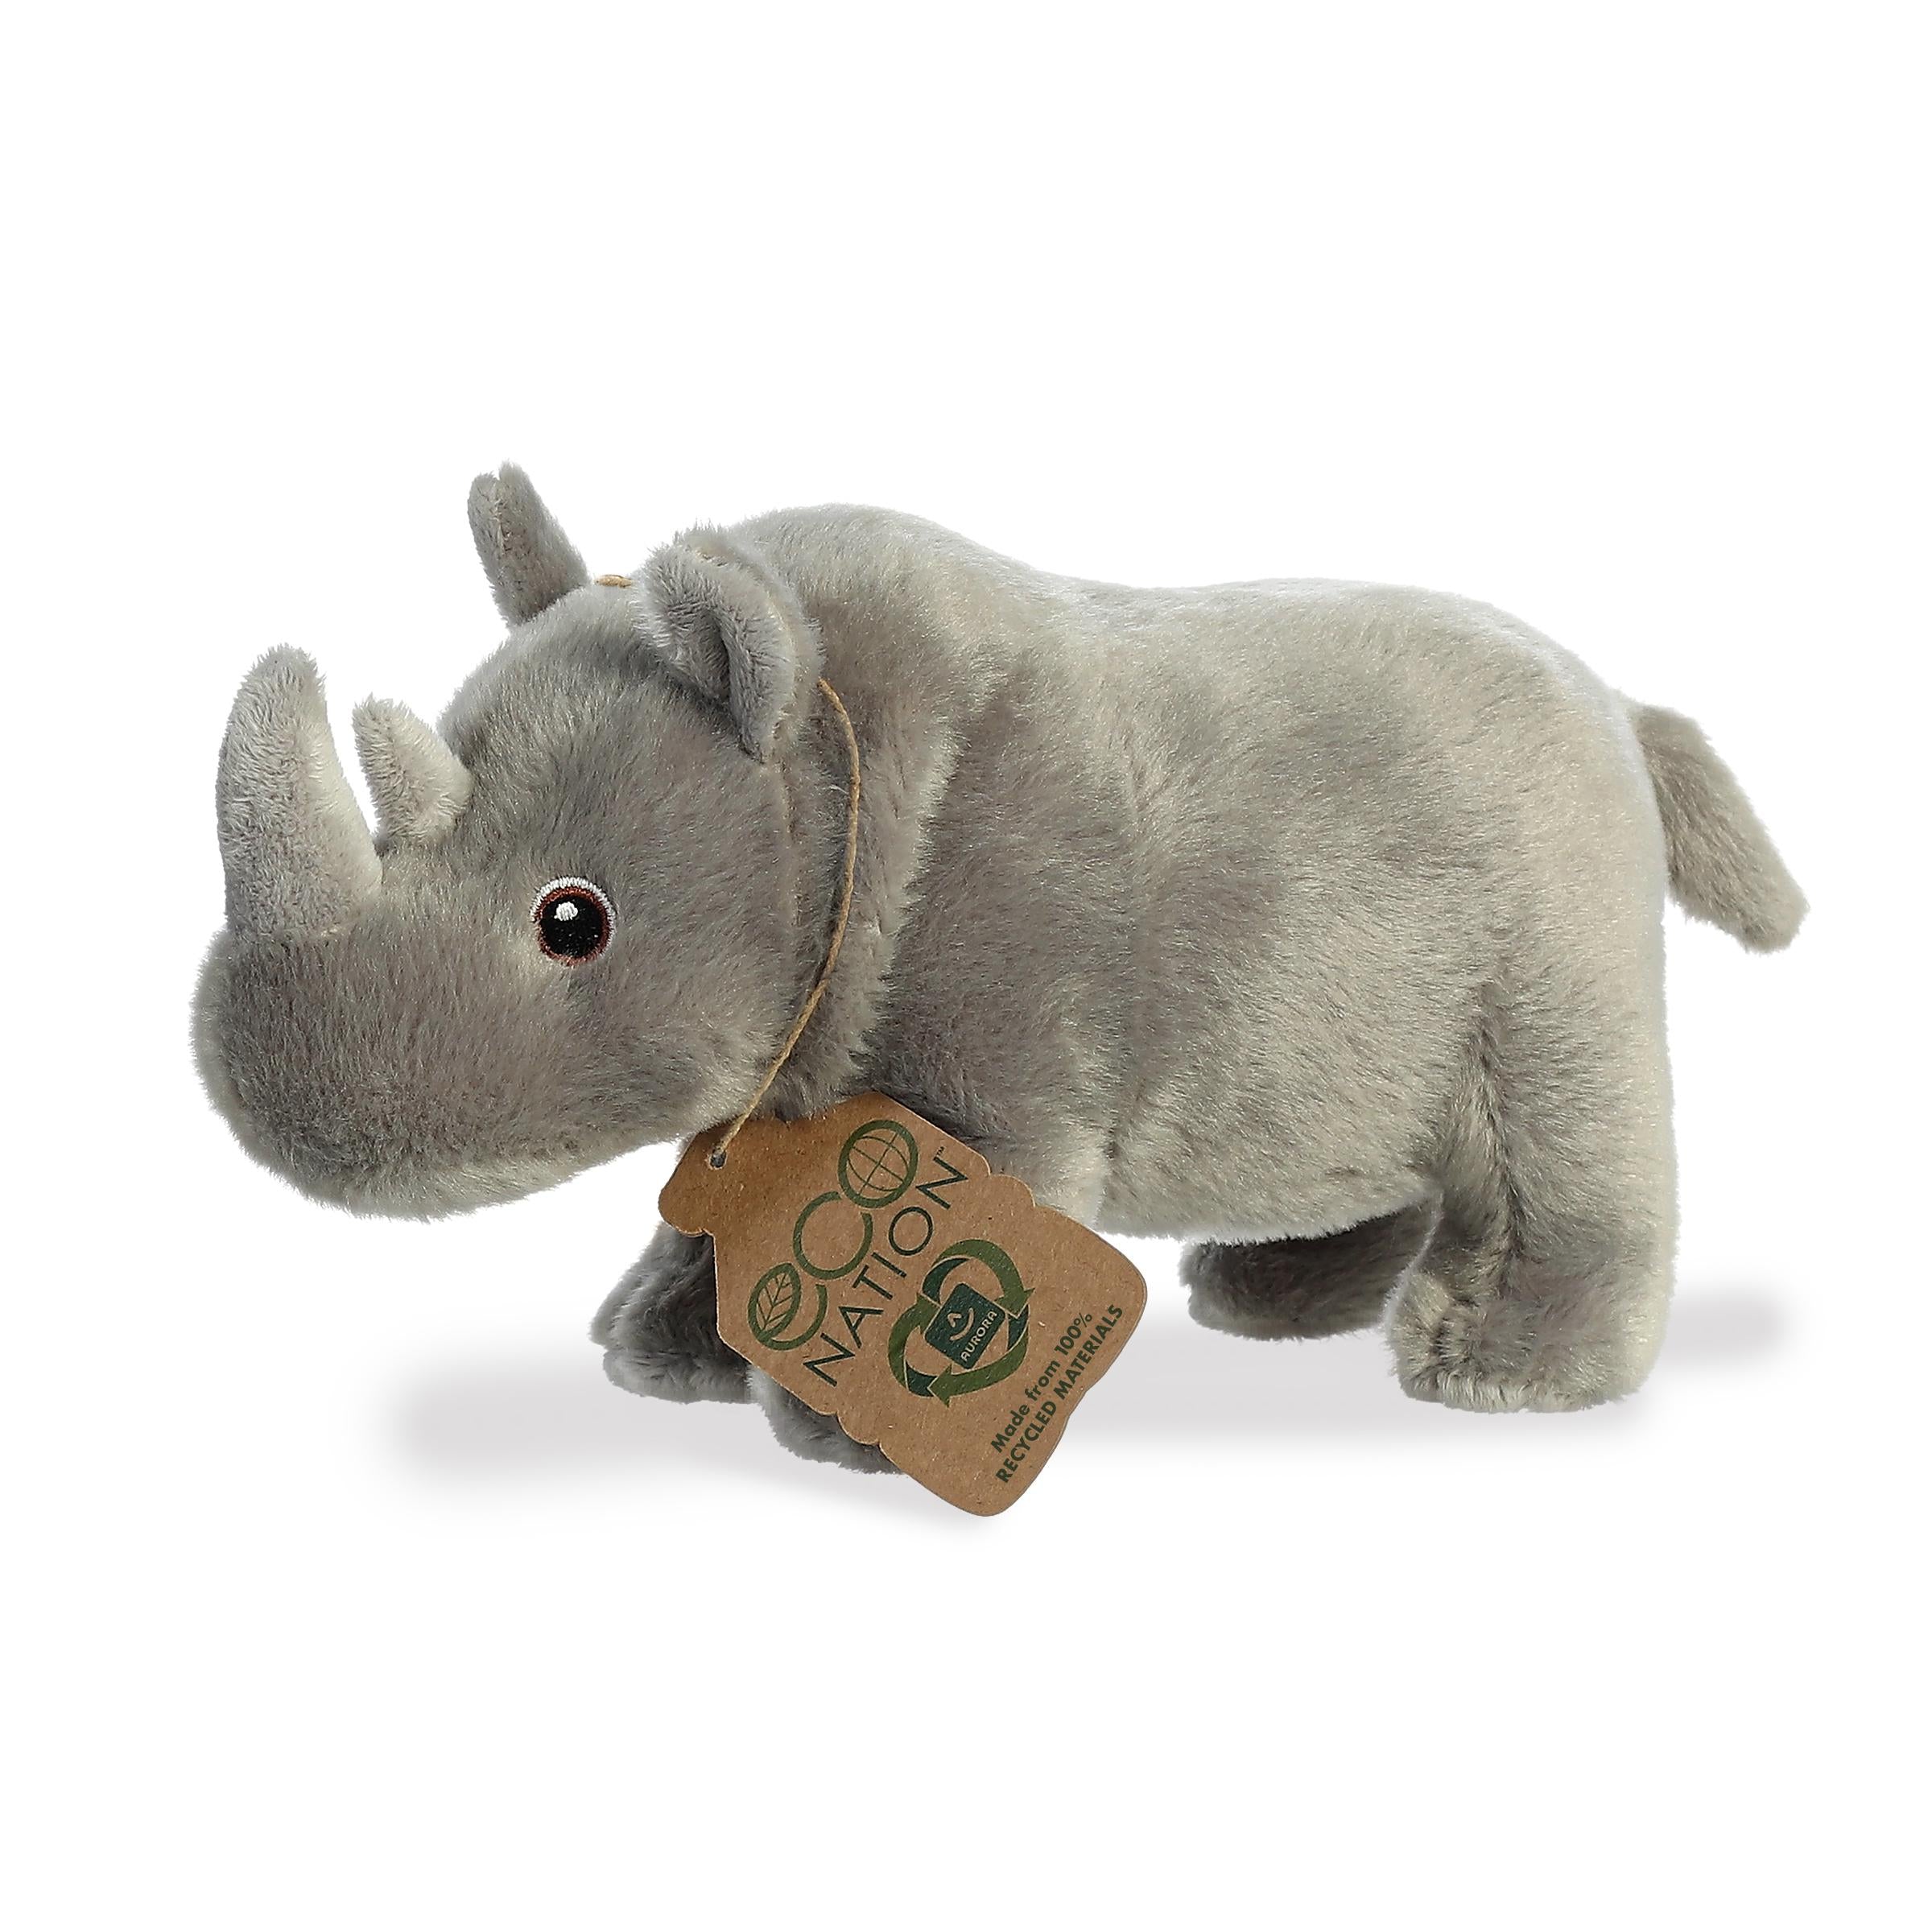 Rhinoceros Ã¢â‚¬â€œ Striking Eco-Nation Stuffed Animals Ã¢â‚¬â€œ